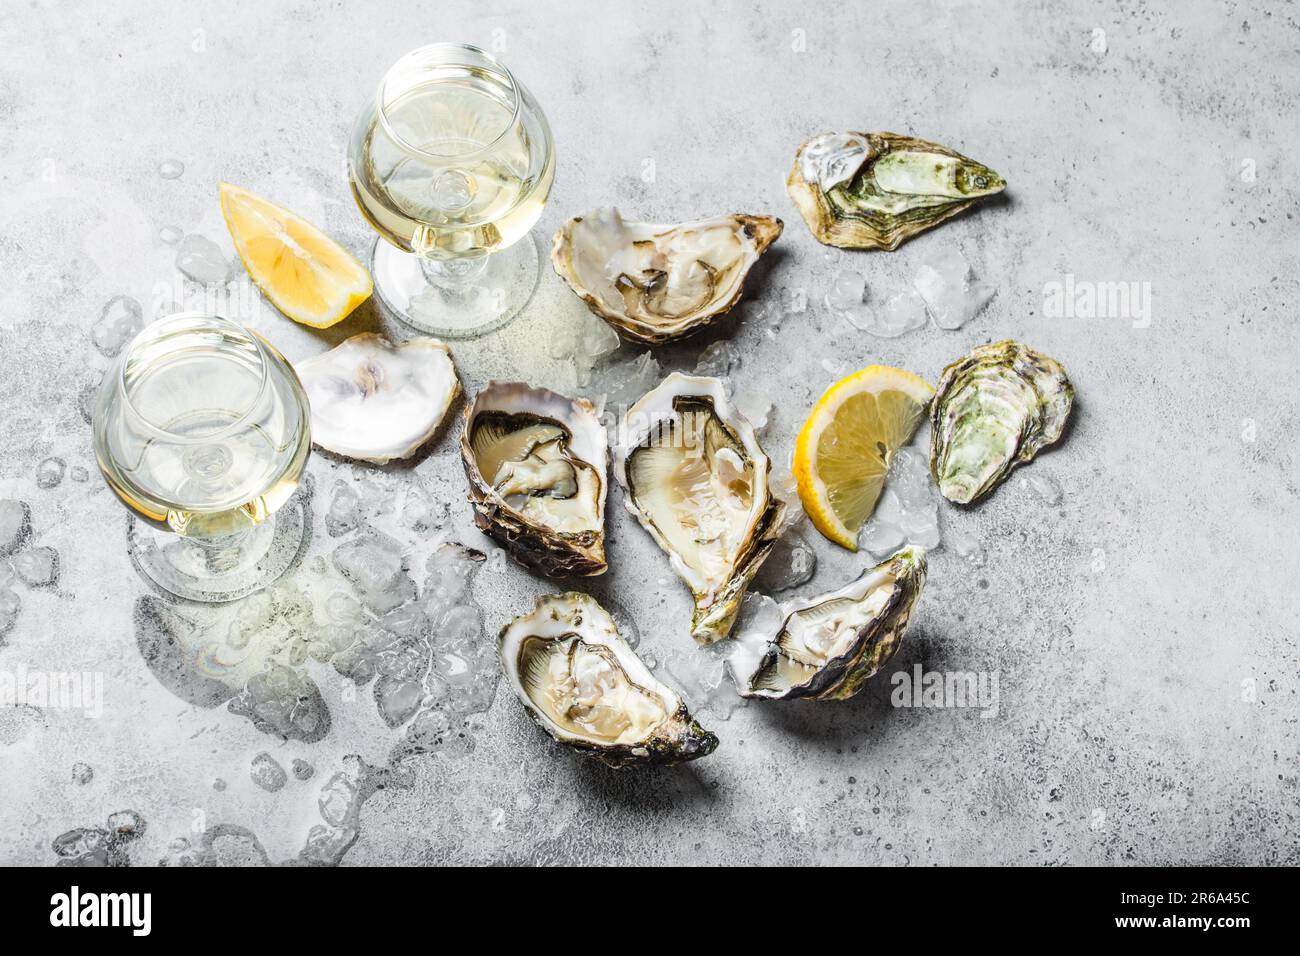 Nahaufnahme von einem halben Dutzend frischer Austern und Muscheln mit Zitronenkeilen, zwei Gläsern Weißwein oder Champagner, Blick von oben, grauer rustikaler Beton Stockfoto